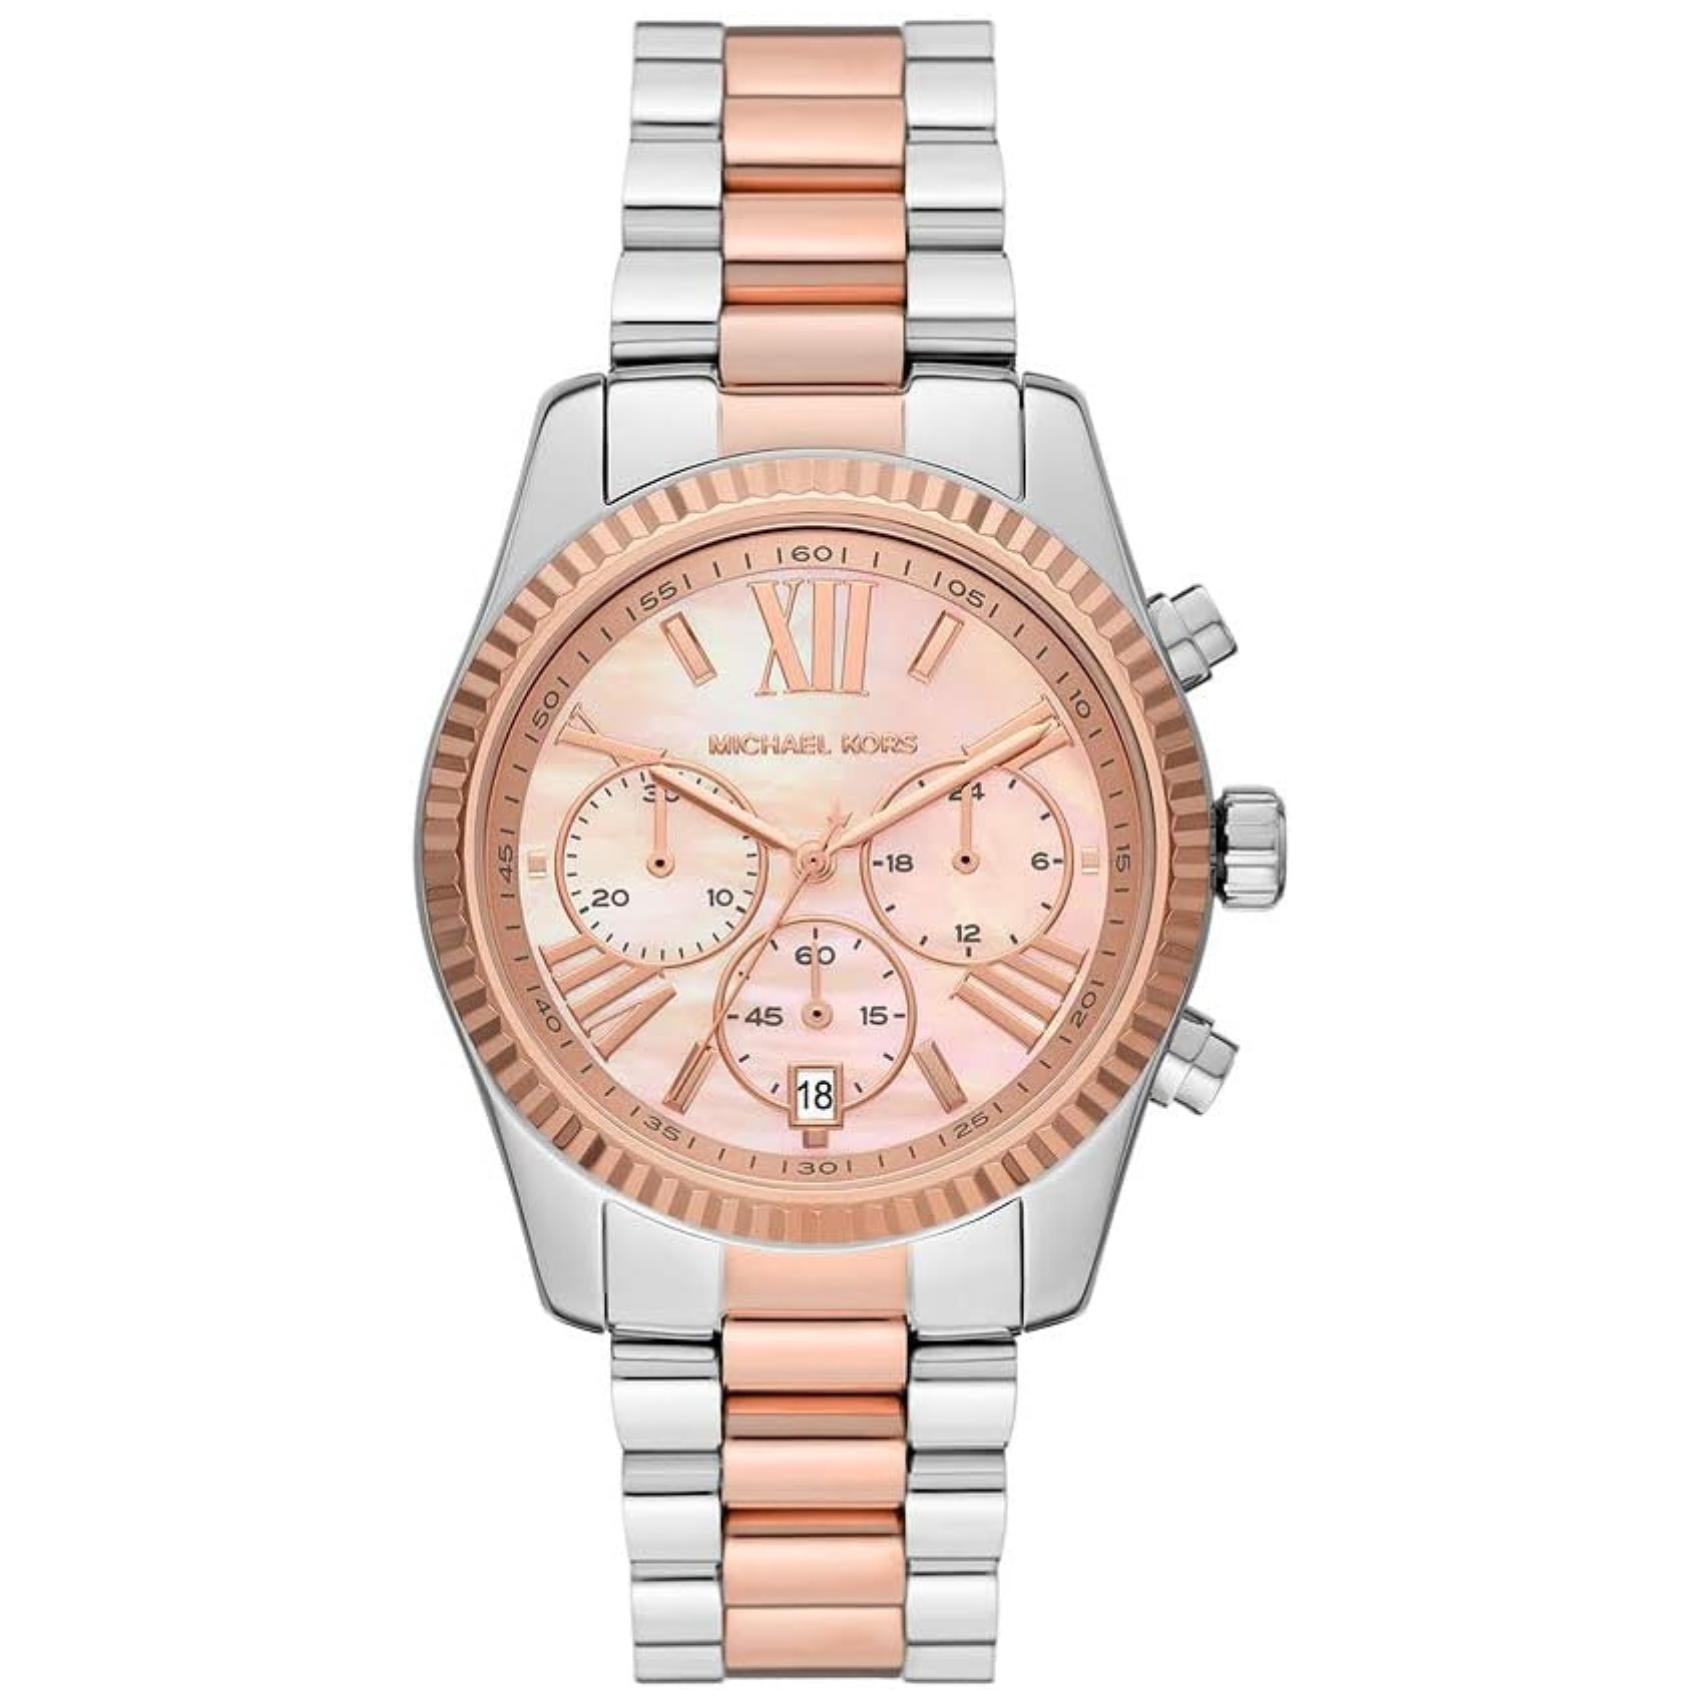 Γυναικείο ρολόι Michael Kors Lexington MK7219 χρονογράφος με δίχρωμο ασημί-ροζ χρυσό ατσάλινο μπρασελέ, στρογγυλό ροζ χρυσό καντράν με ημερομηνία και στεφάνι 38mm.